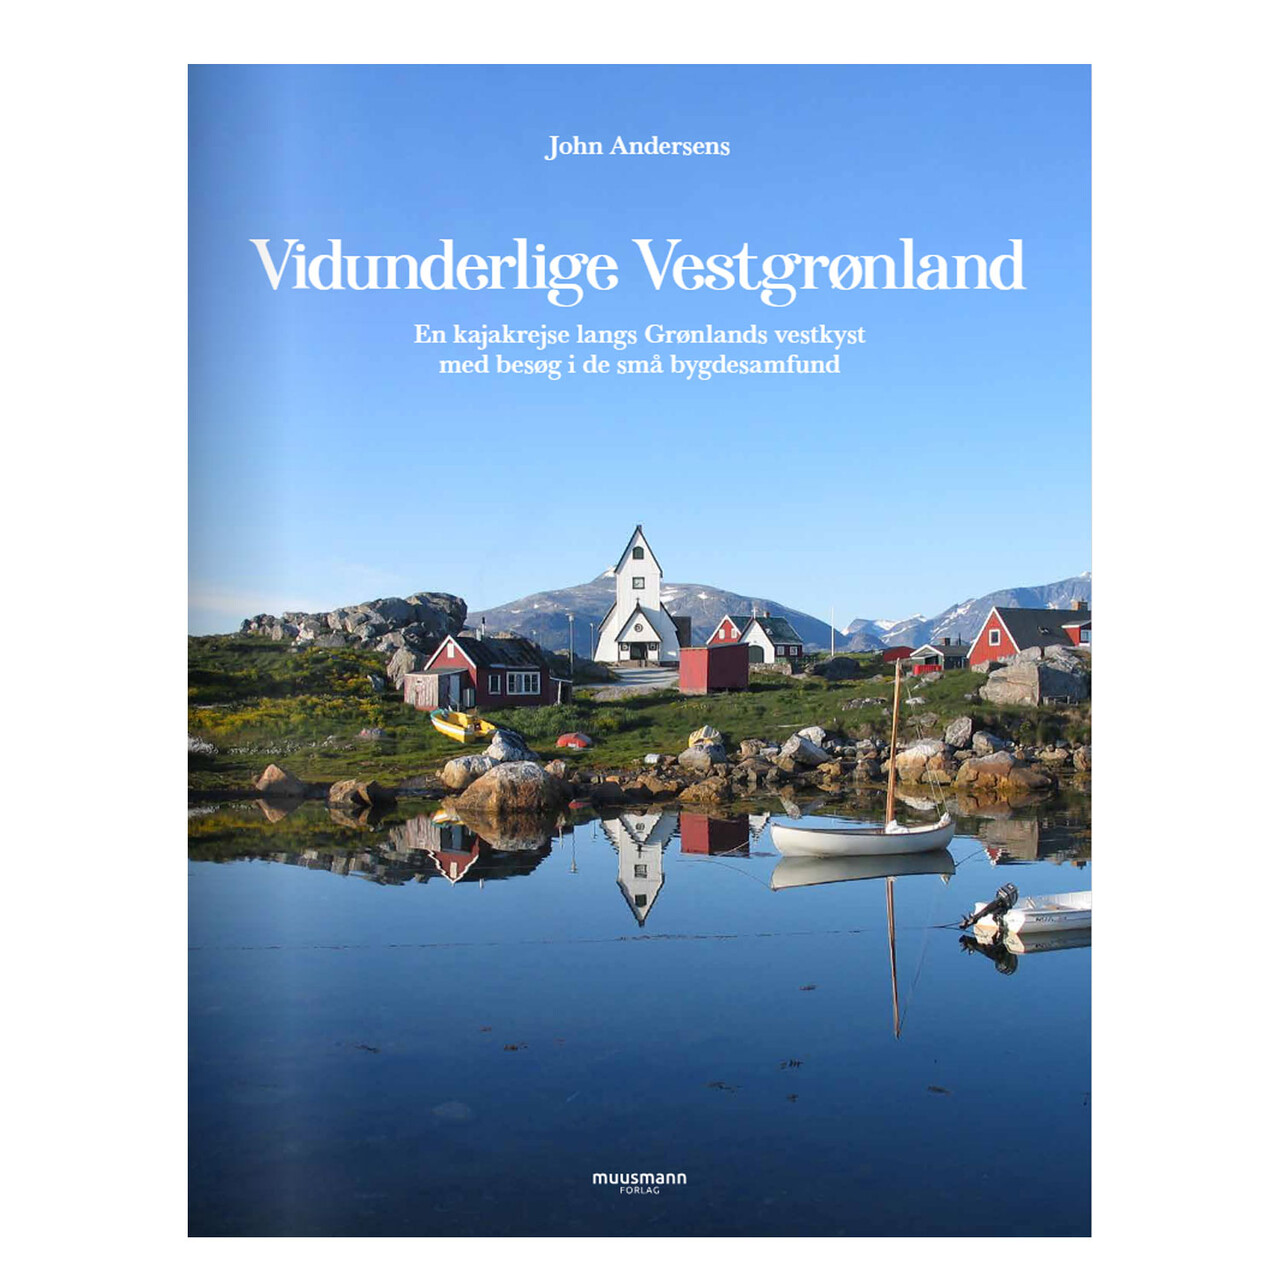 Billede af Muusmann forlag Vidunderlige Vestgrønland, John Andersen